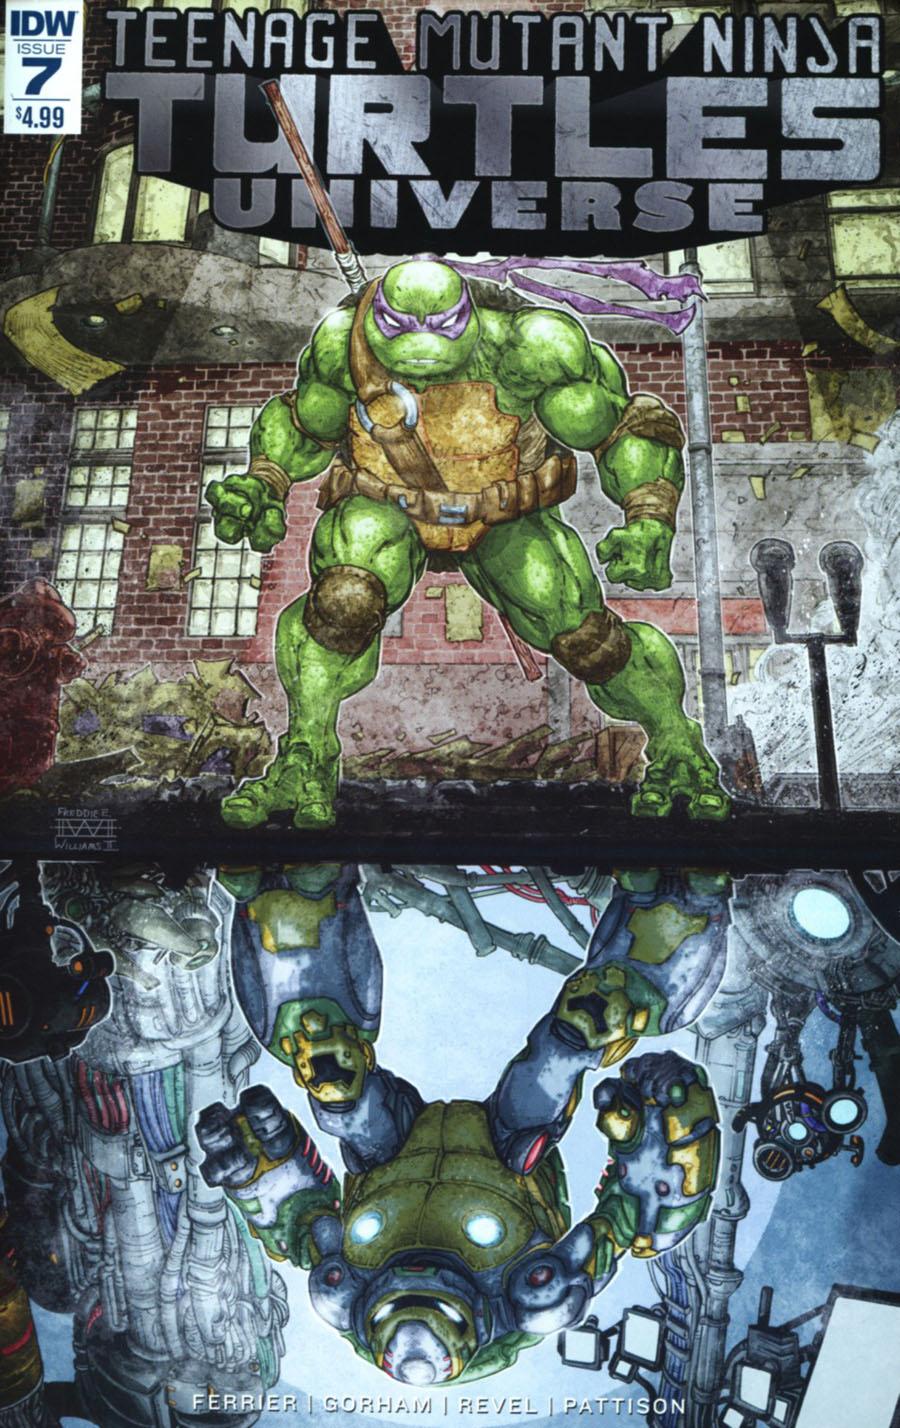 Teenage Mutant Ninja Turtles Universe Vol. 1 #7